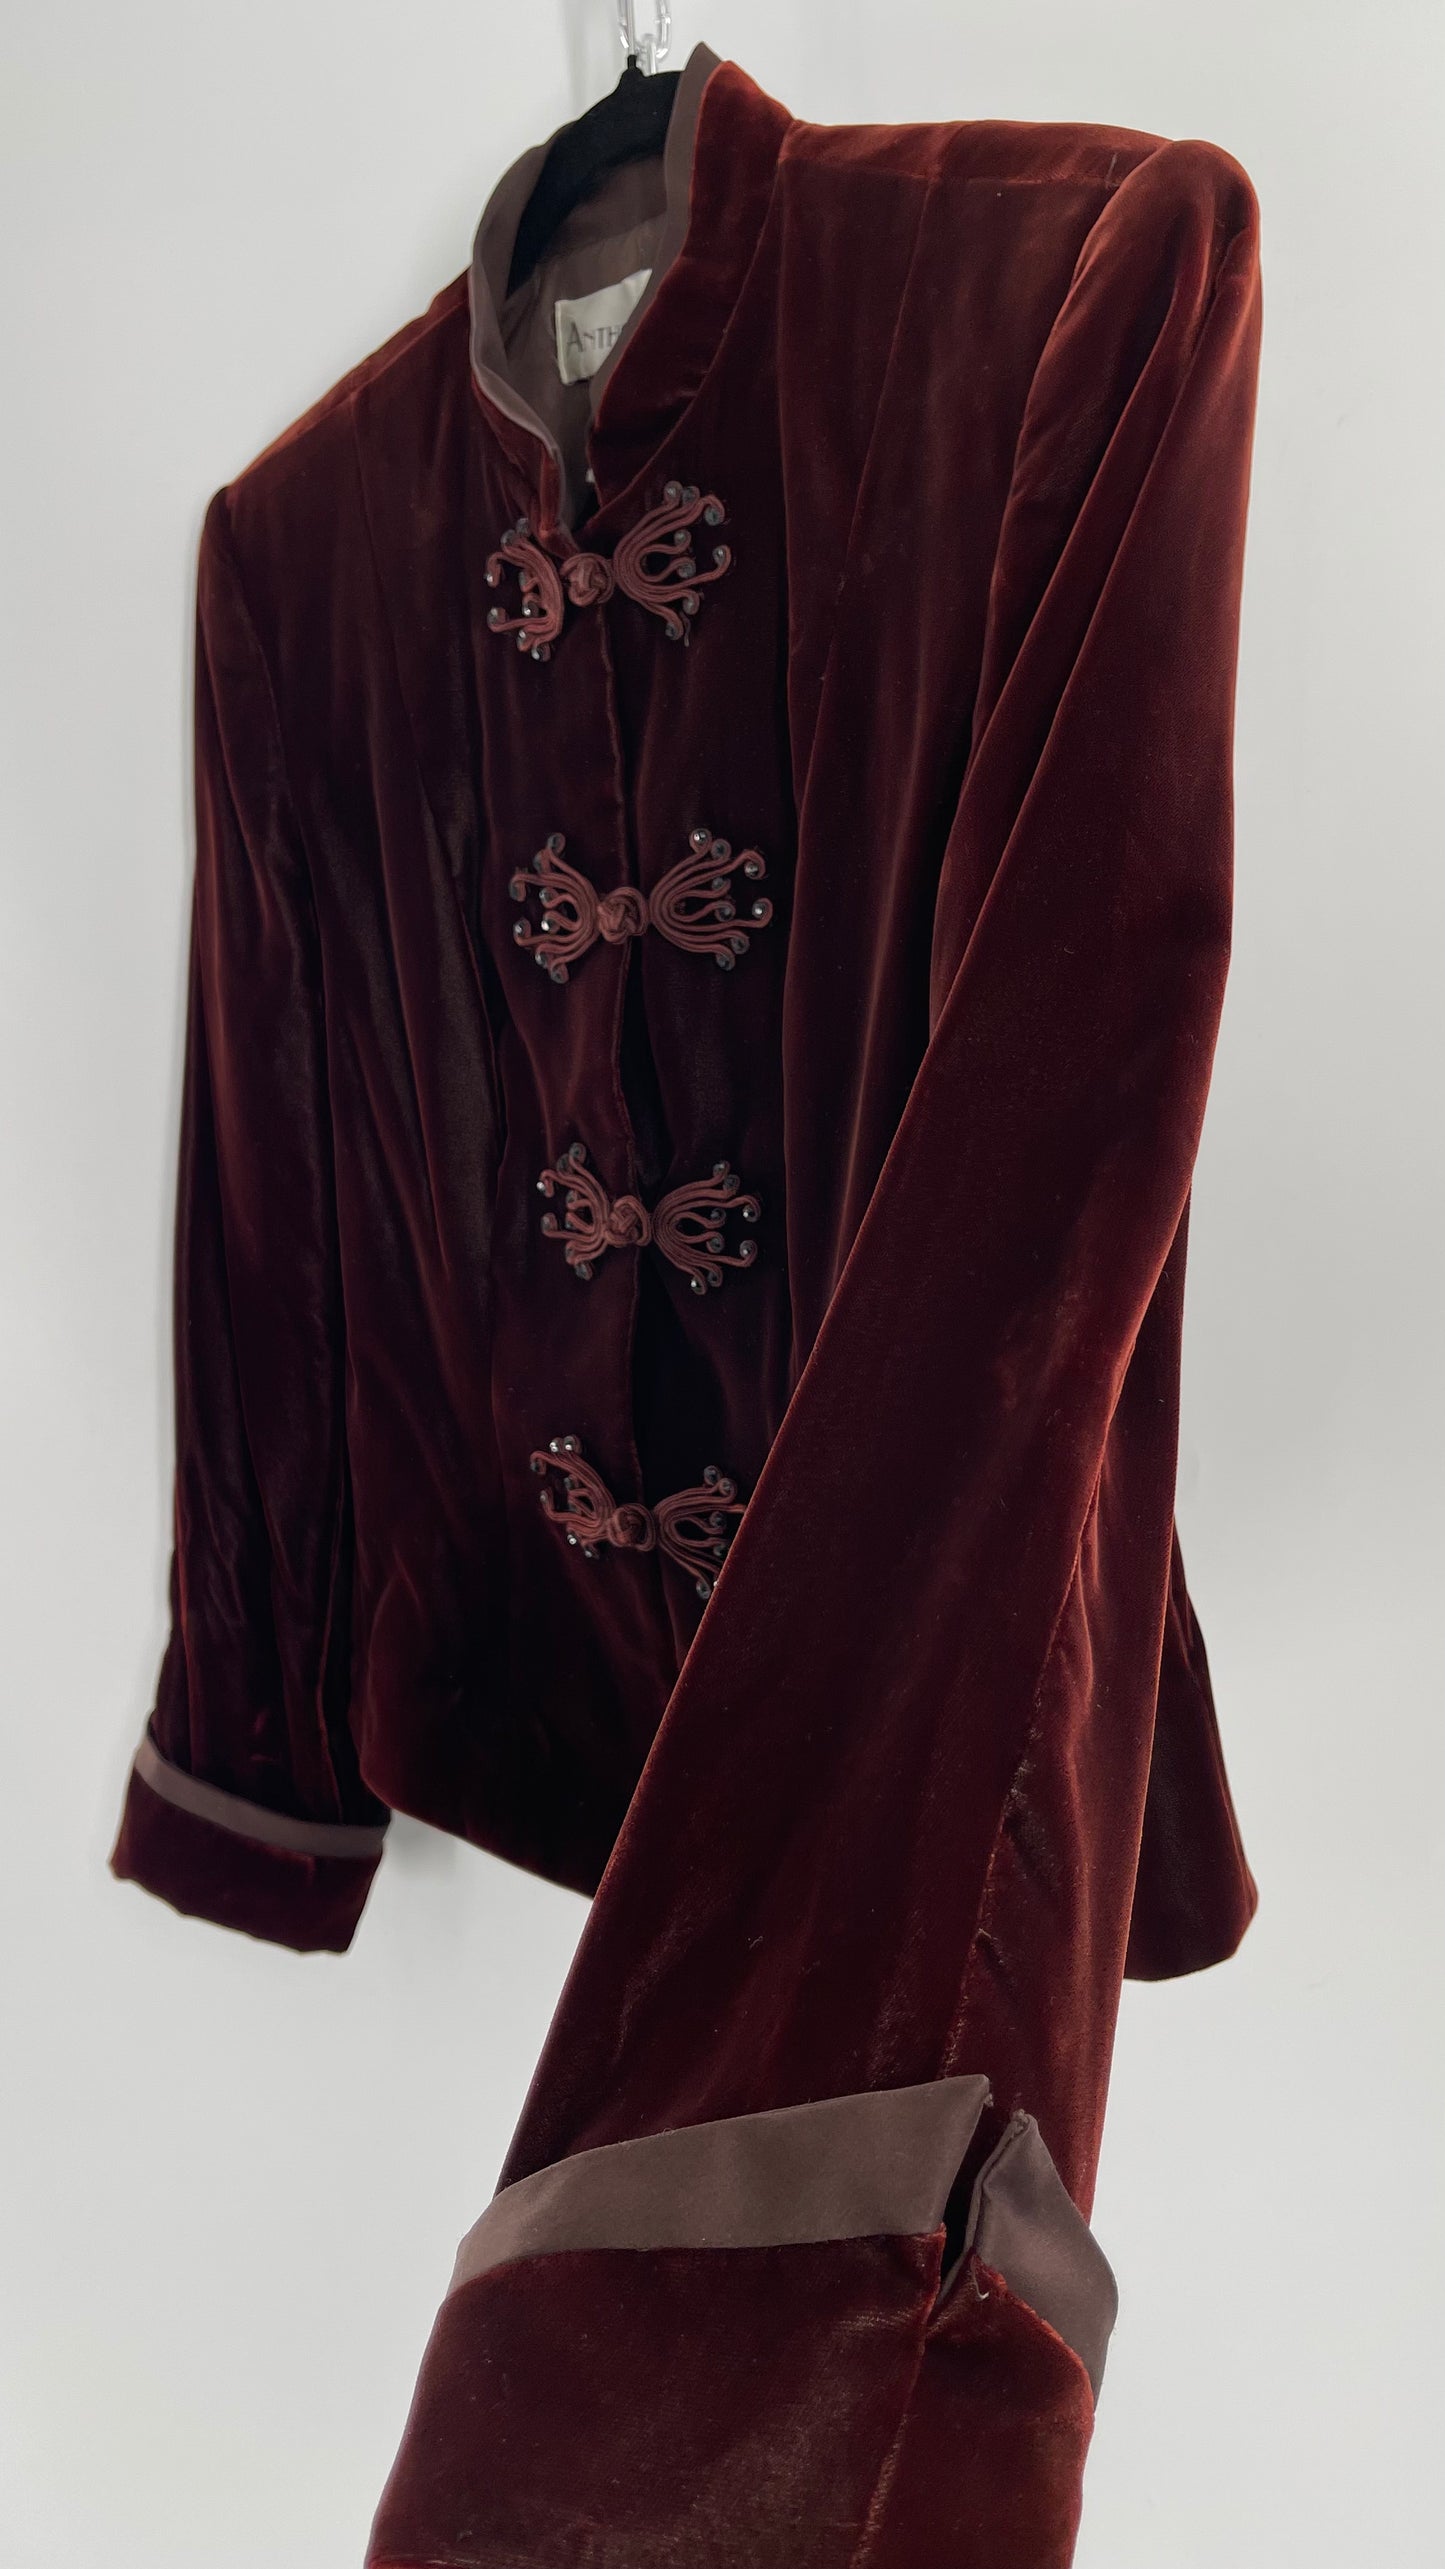 Vintage Anthony Vask Blood Red Burgundy Velvet Coat Jacket with Rope Closure Detailing (C)(10)